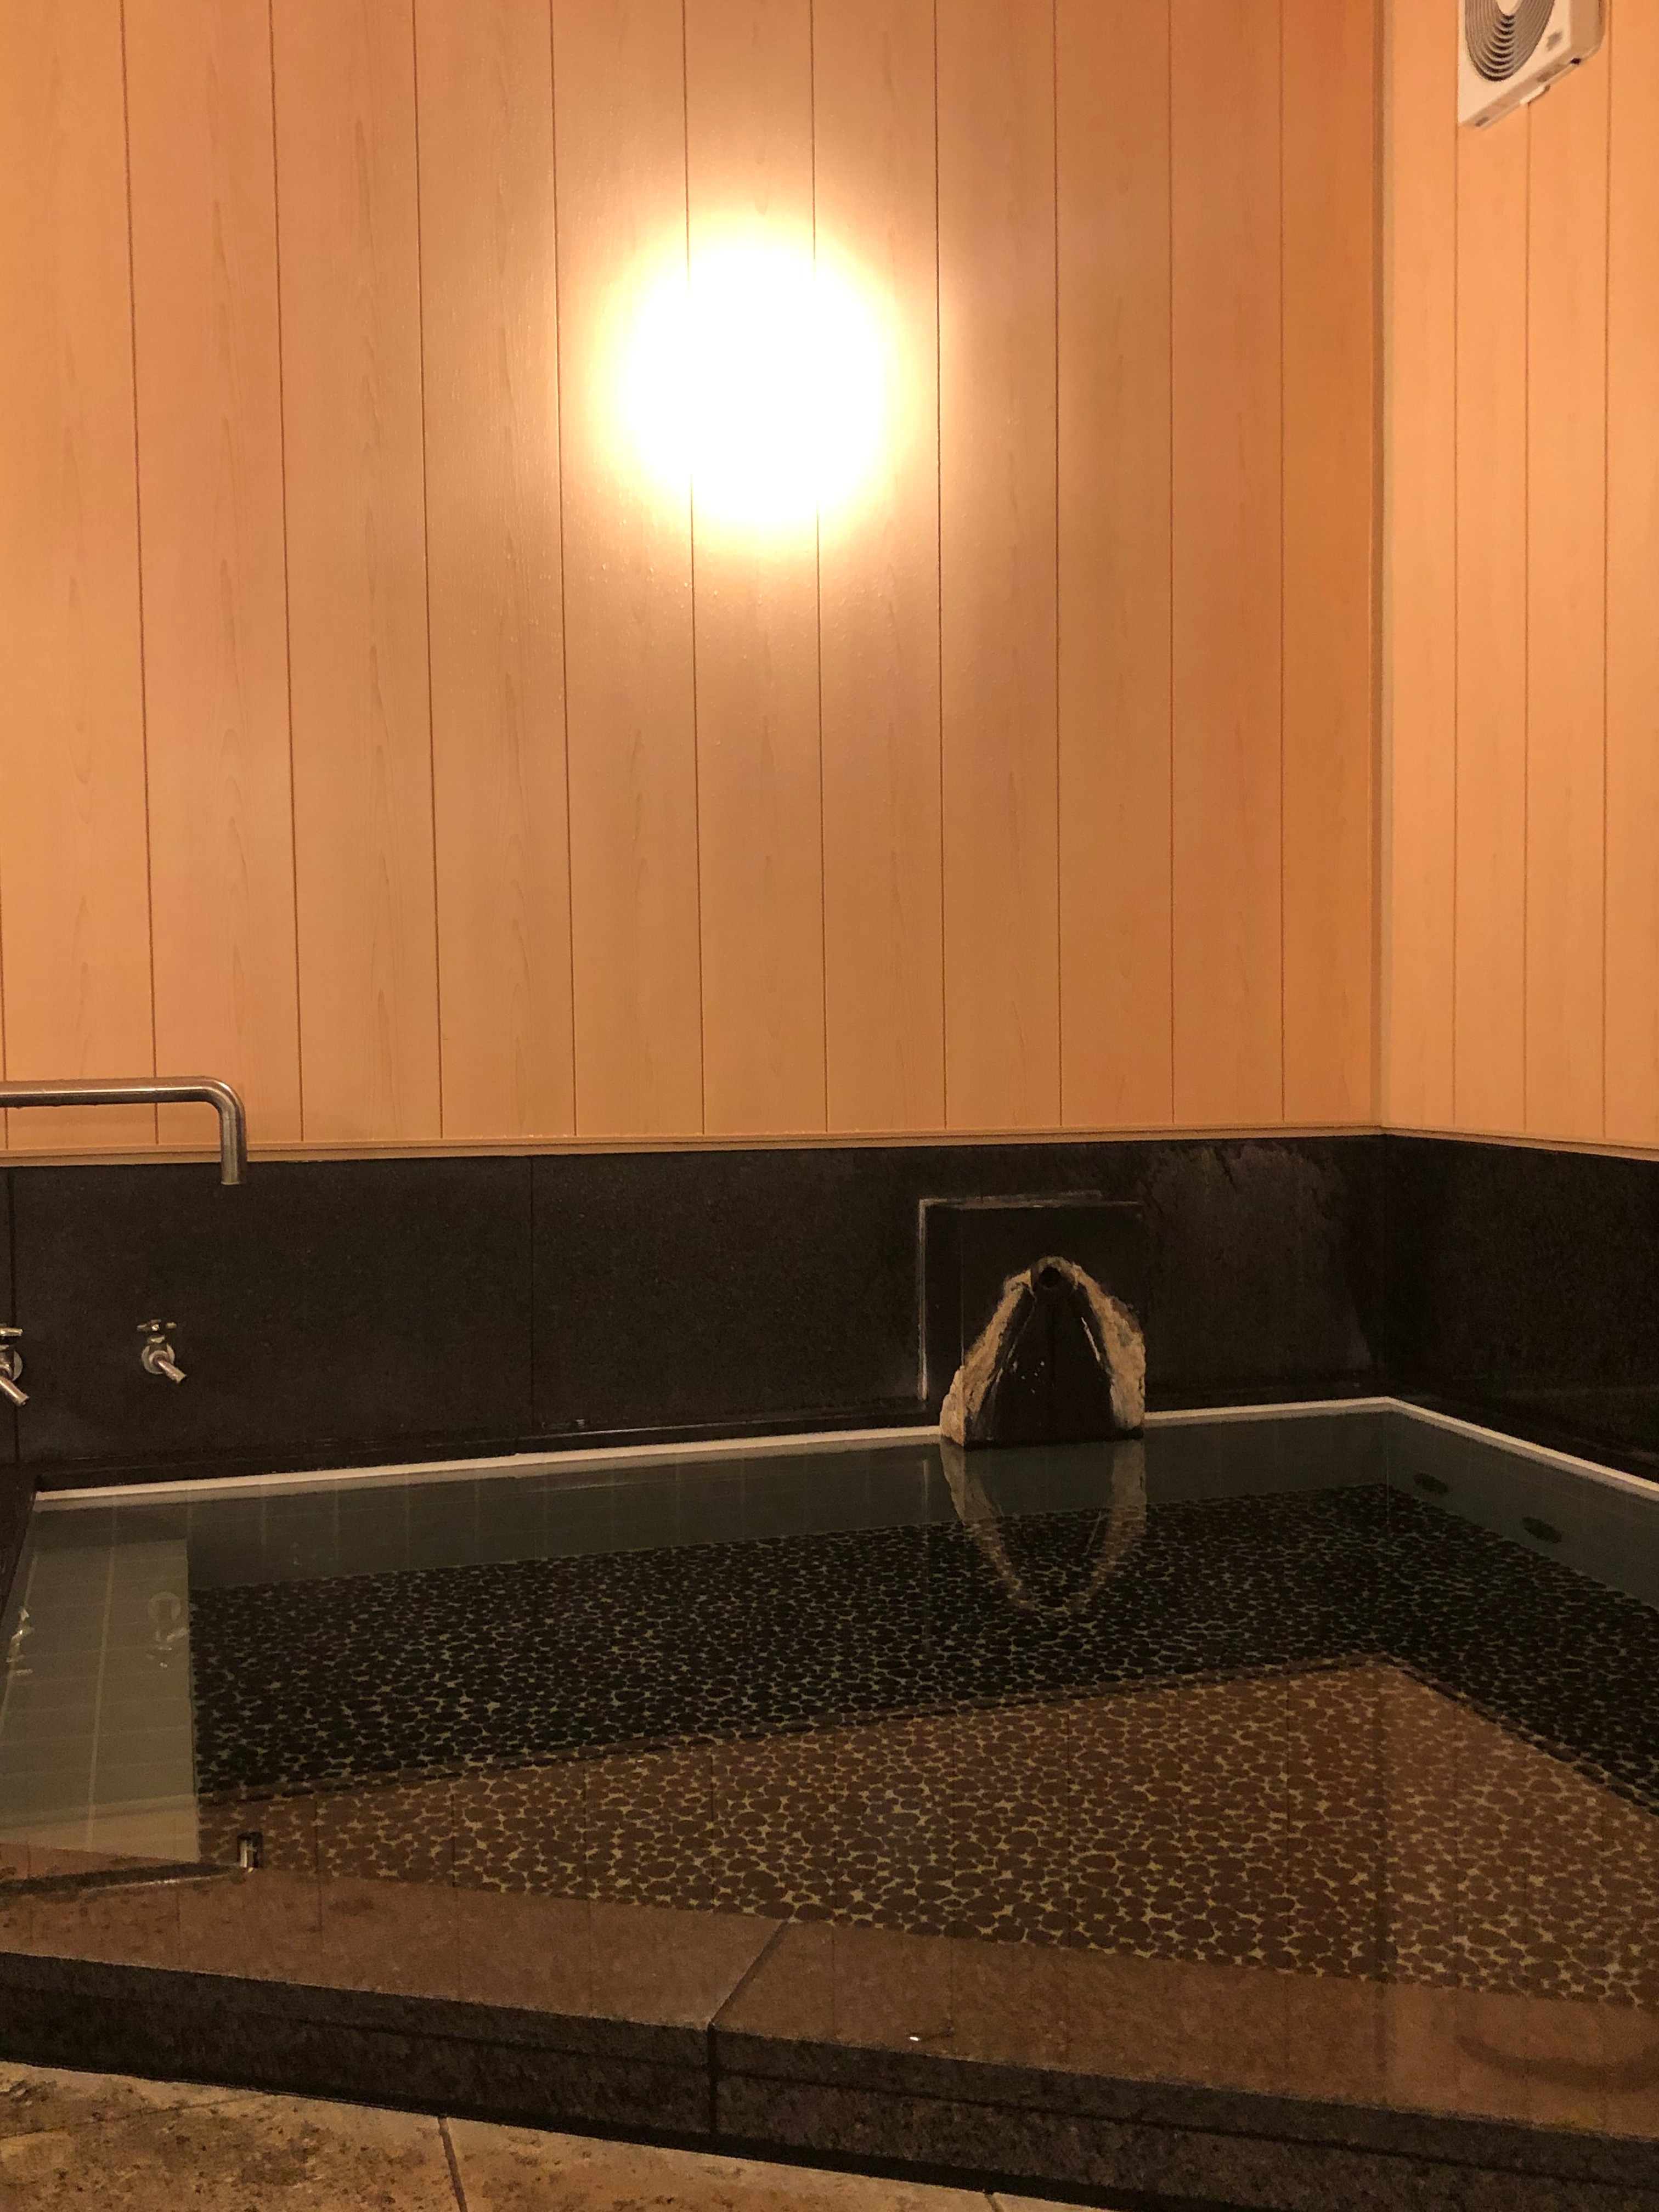 2019年10月翻新的男士室内浴池